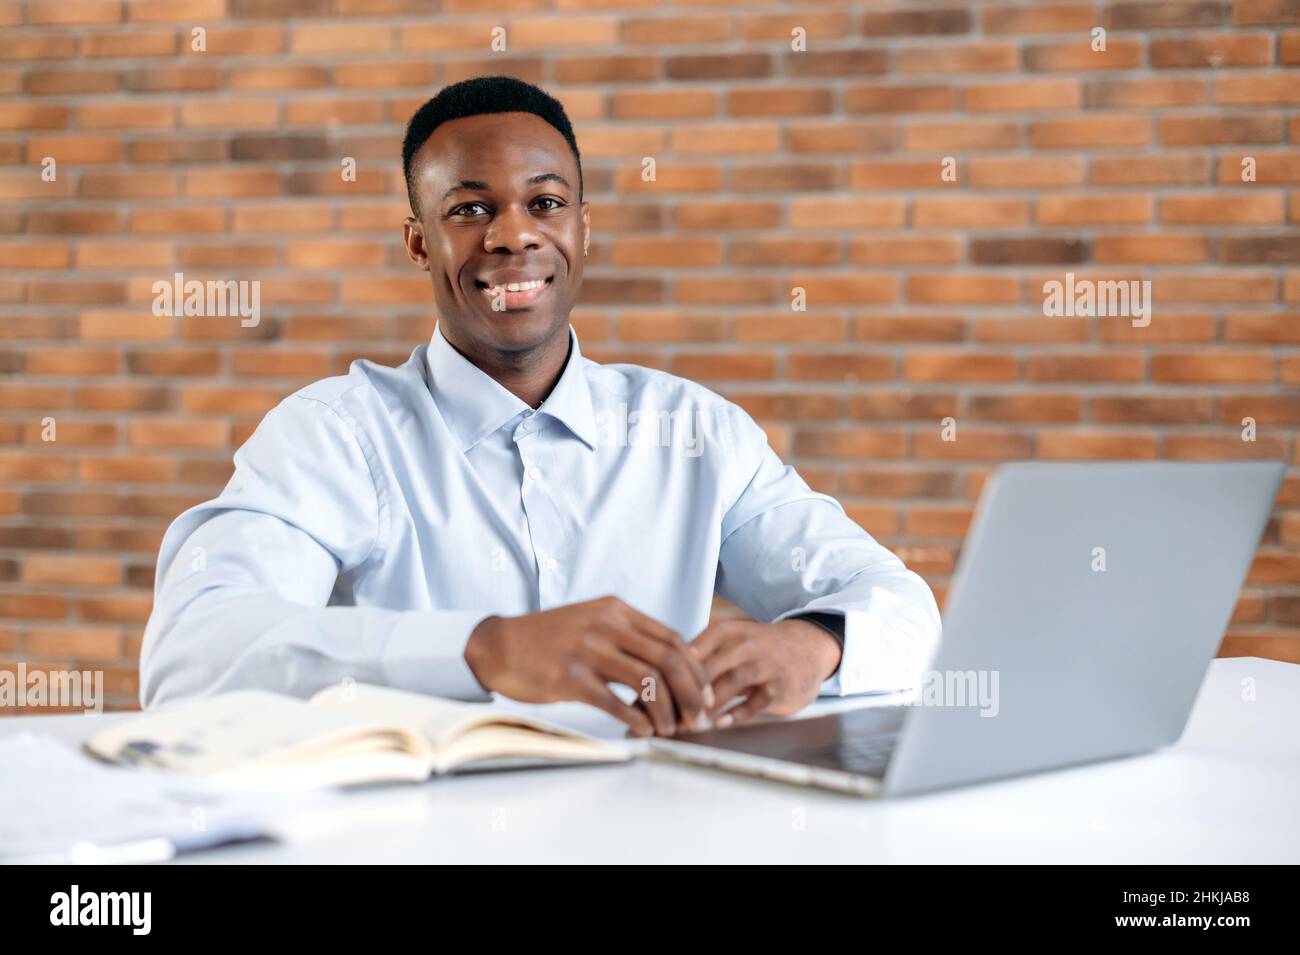 Retrato de un atractivo afroamericano en la oficina moderna. Agradable hombre inteligente de éxito, gerente superior de la empresa o comerciante, trabajando con el portátil en el lugar de trabajo, mira la cámara, sonreír amable Foto de stock